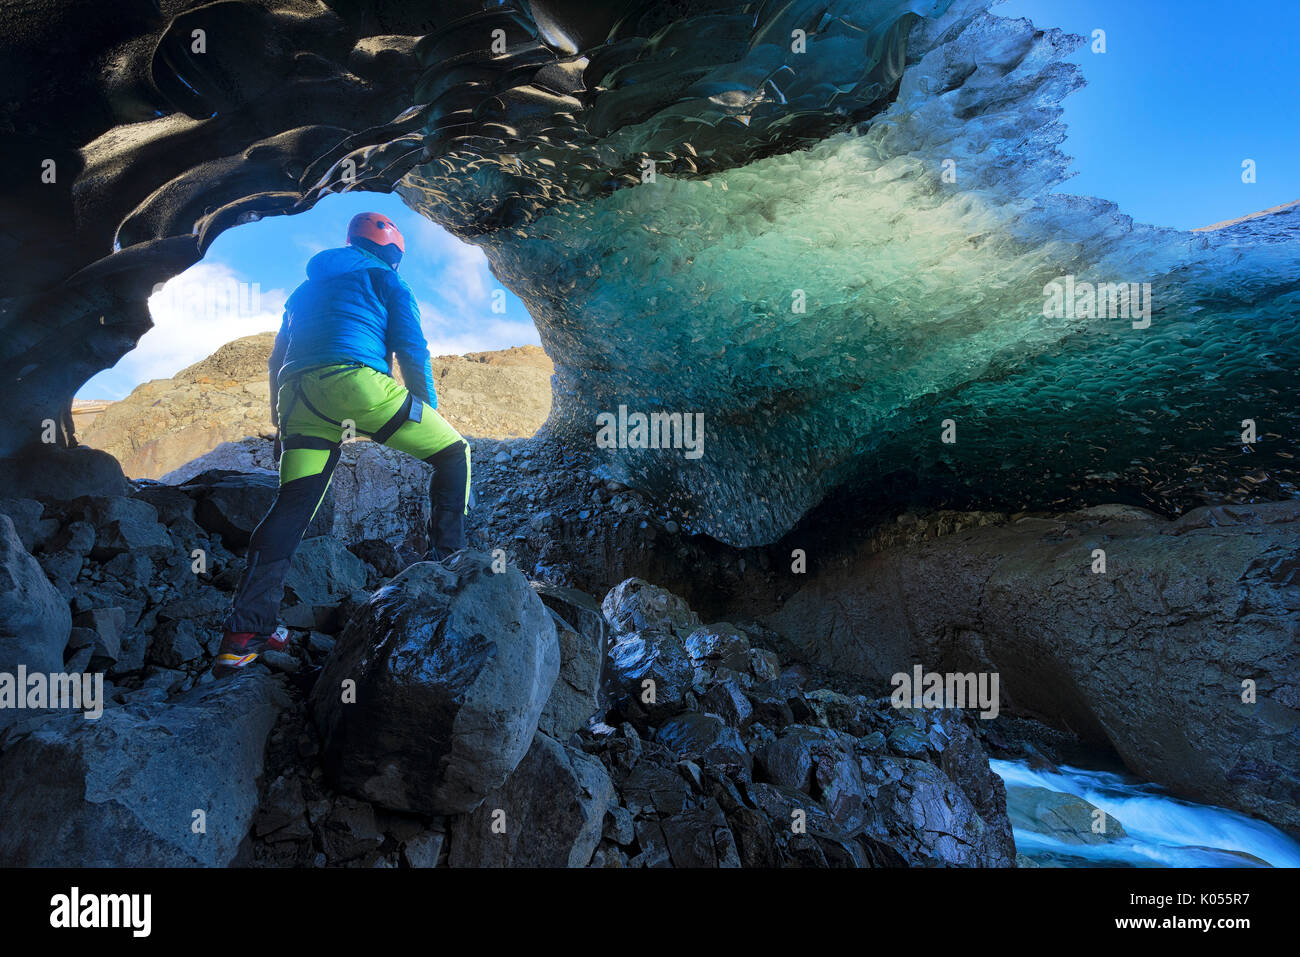 Le parc national de Skaftafell, l'Islande, l'Europe. L'homme admire le cristal bleu caverne de glace sous le glacier de Vatnajokull en hiver. Banque D'Images